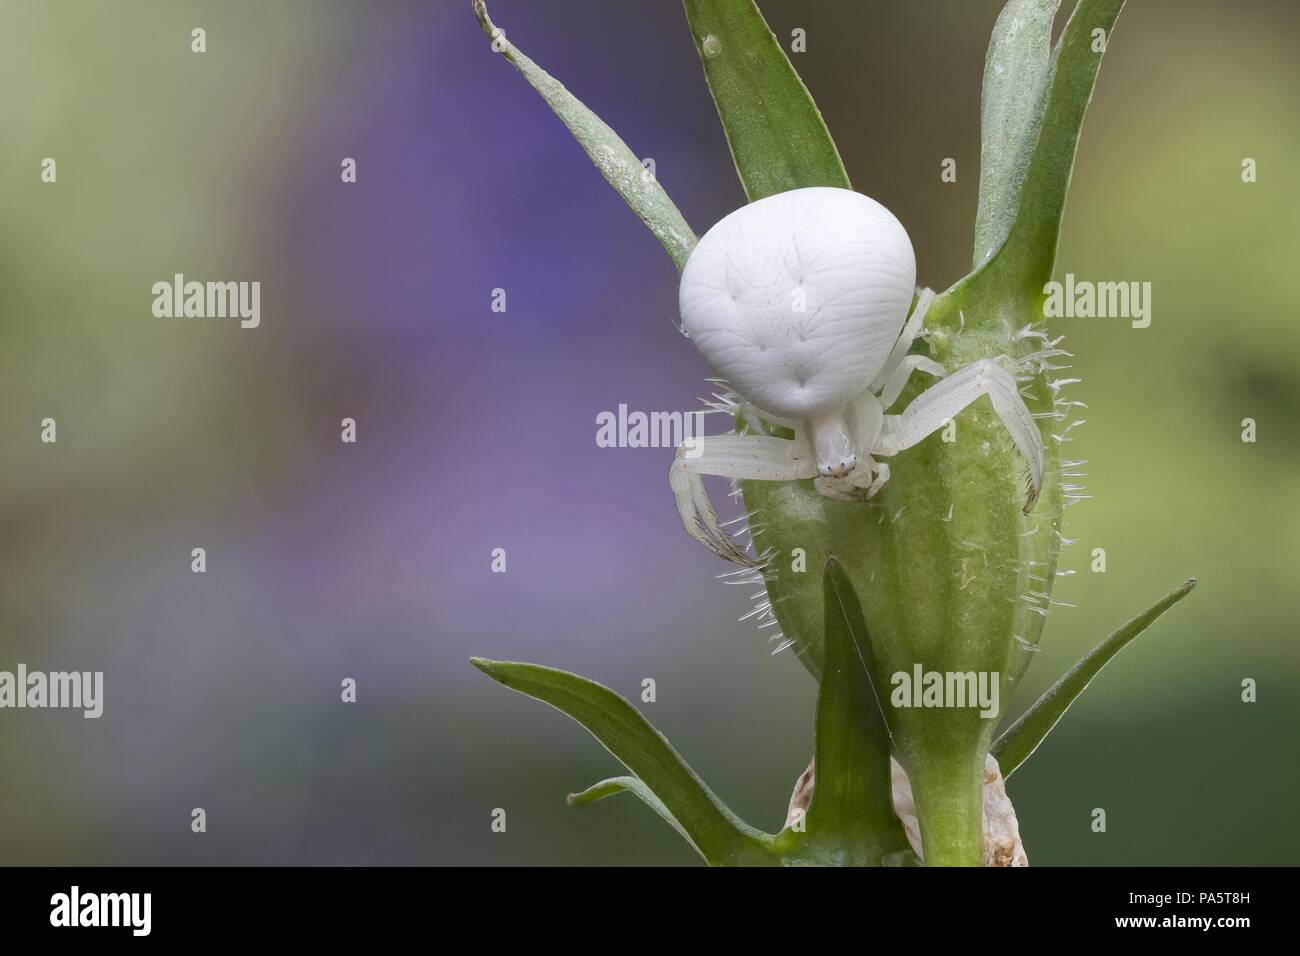 Houghton (Misumena vatia araignée crabe) sur le calice d'un dessèchement bellflower (Campanula sp.), Hesse, Allemagne Banque D'Images